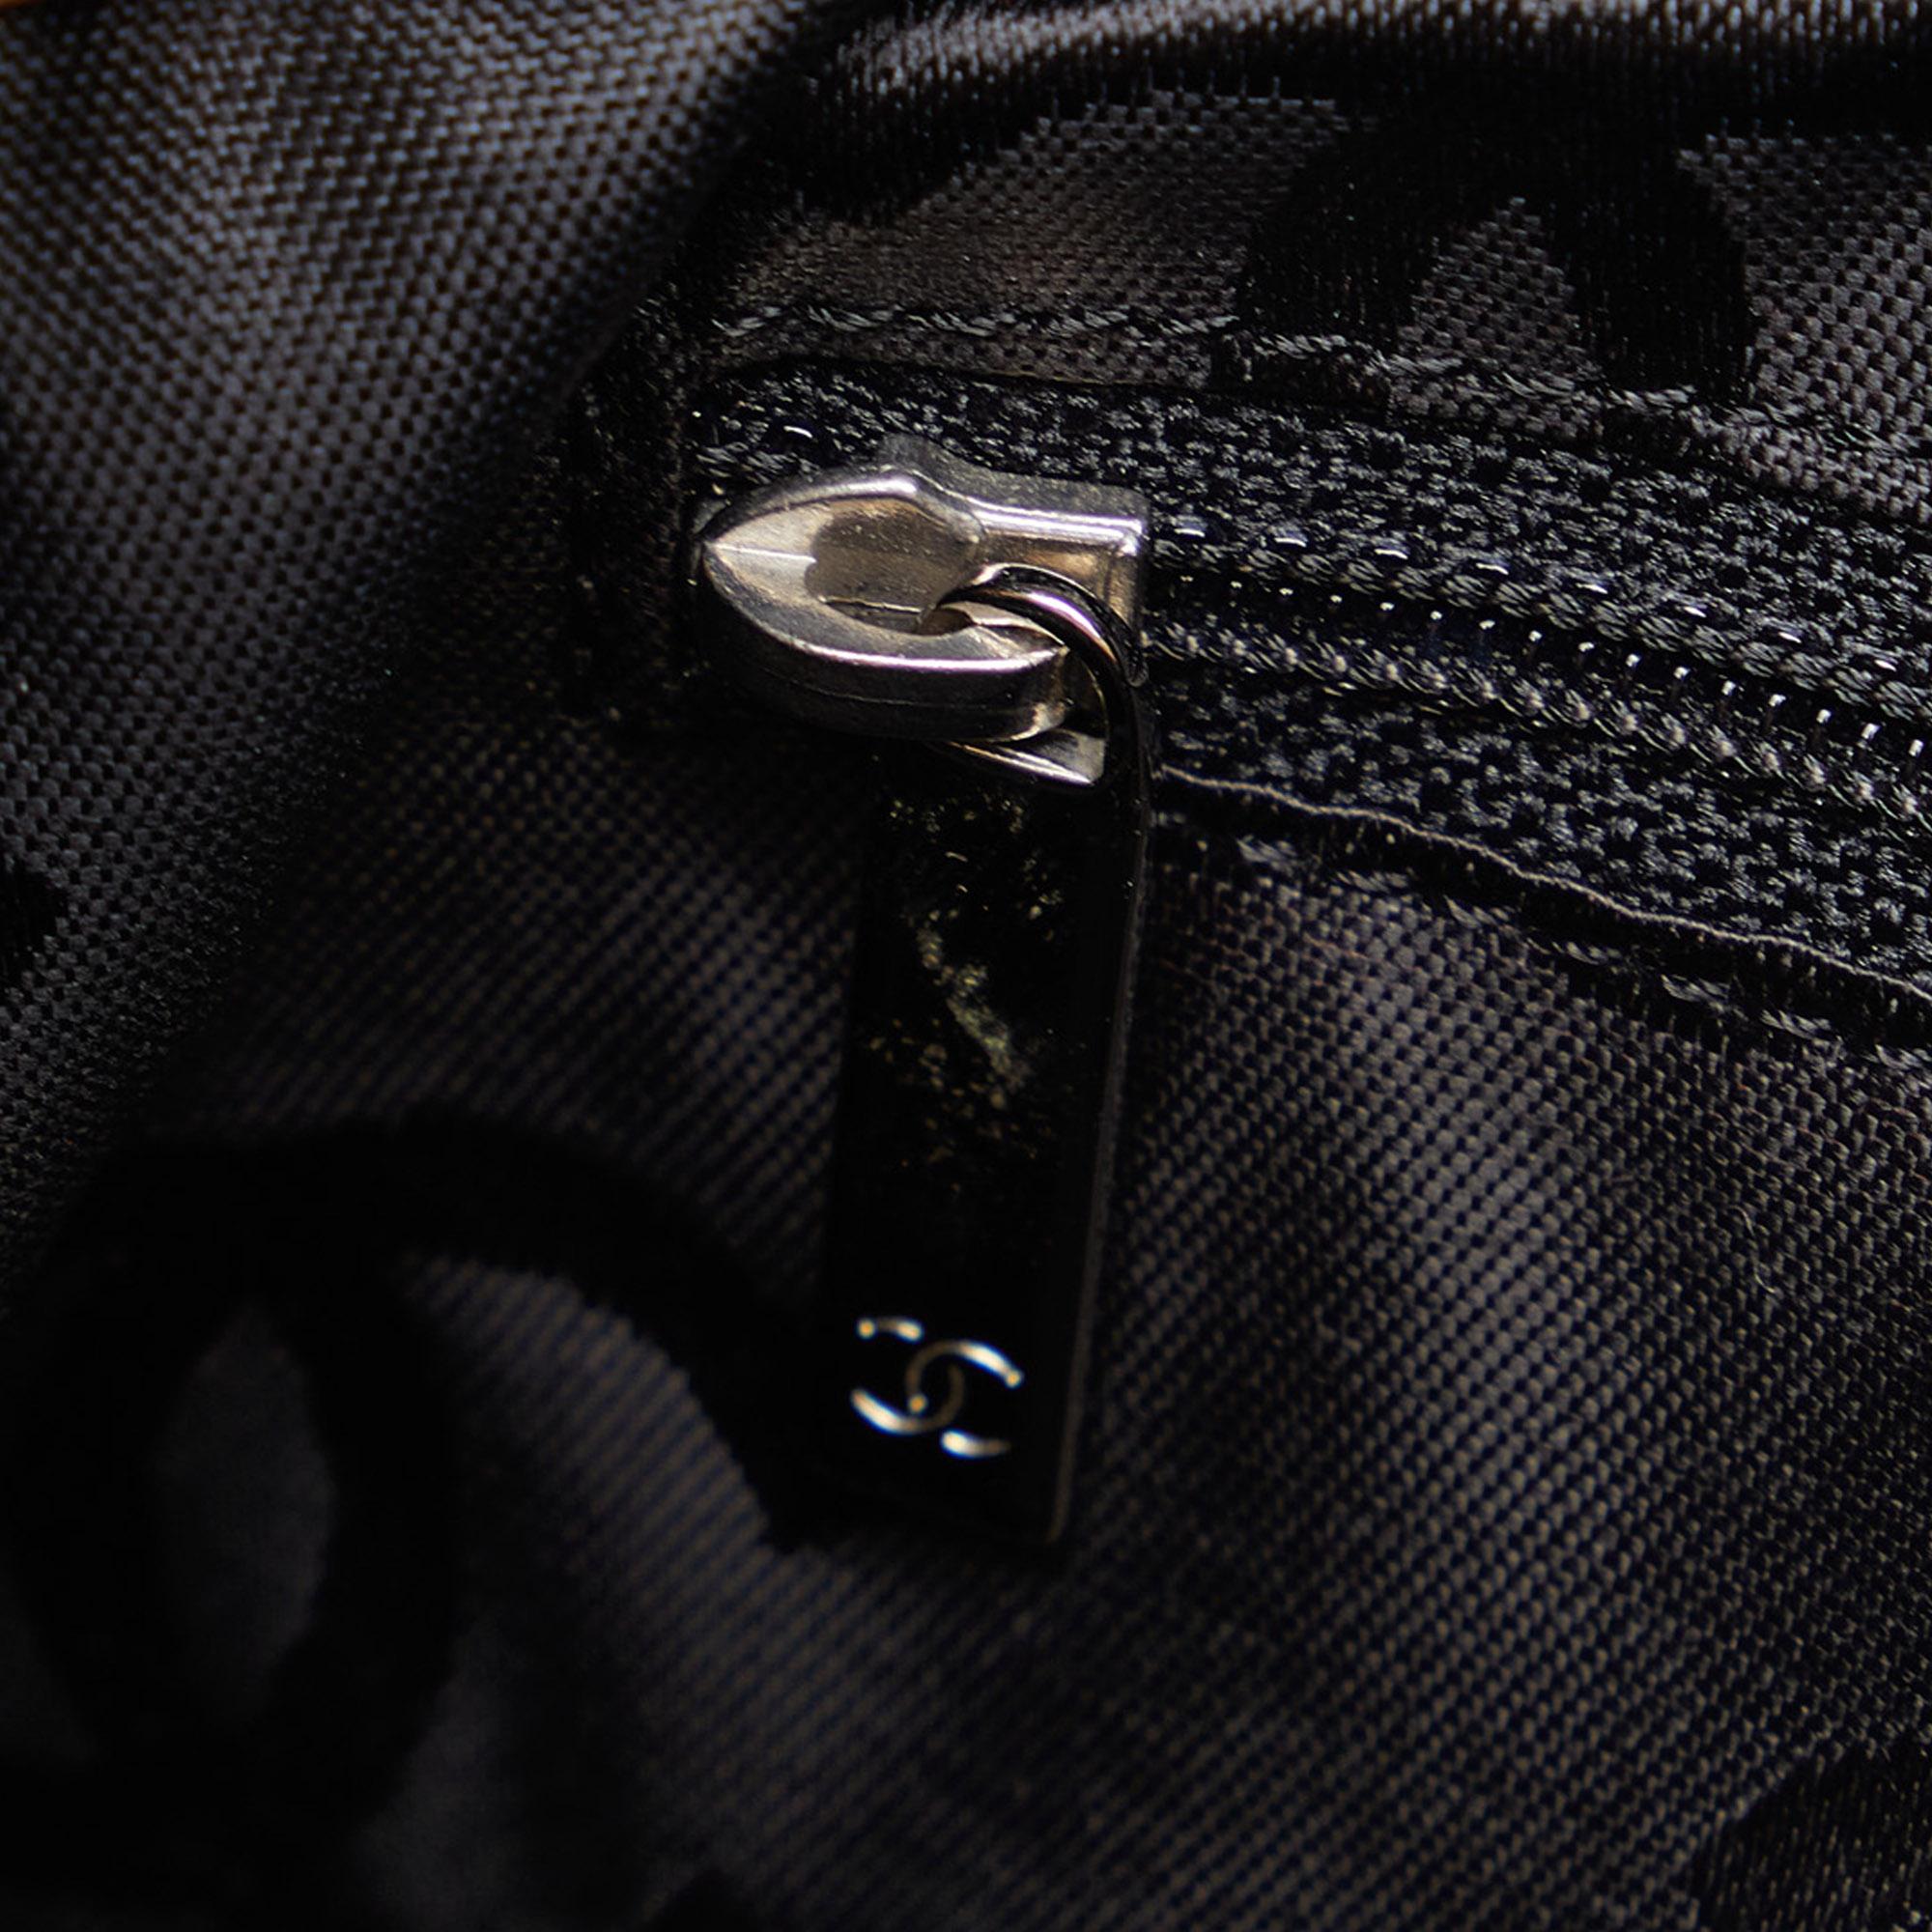 Chanel Beige/Black Medium Cambon Ligne Shoulder Bag